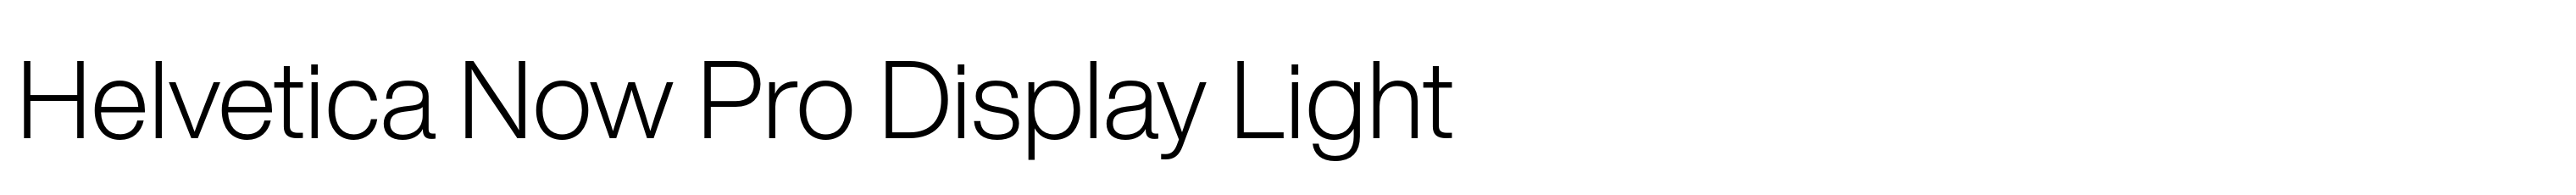 Helvetica Now Pro Display Light